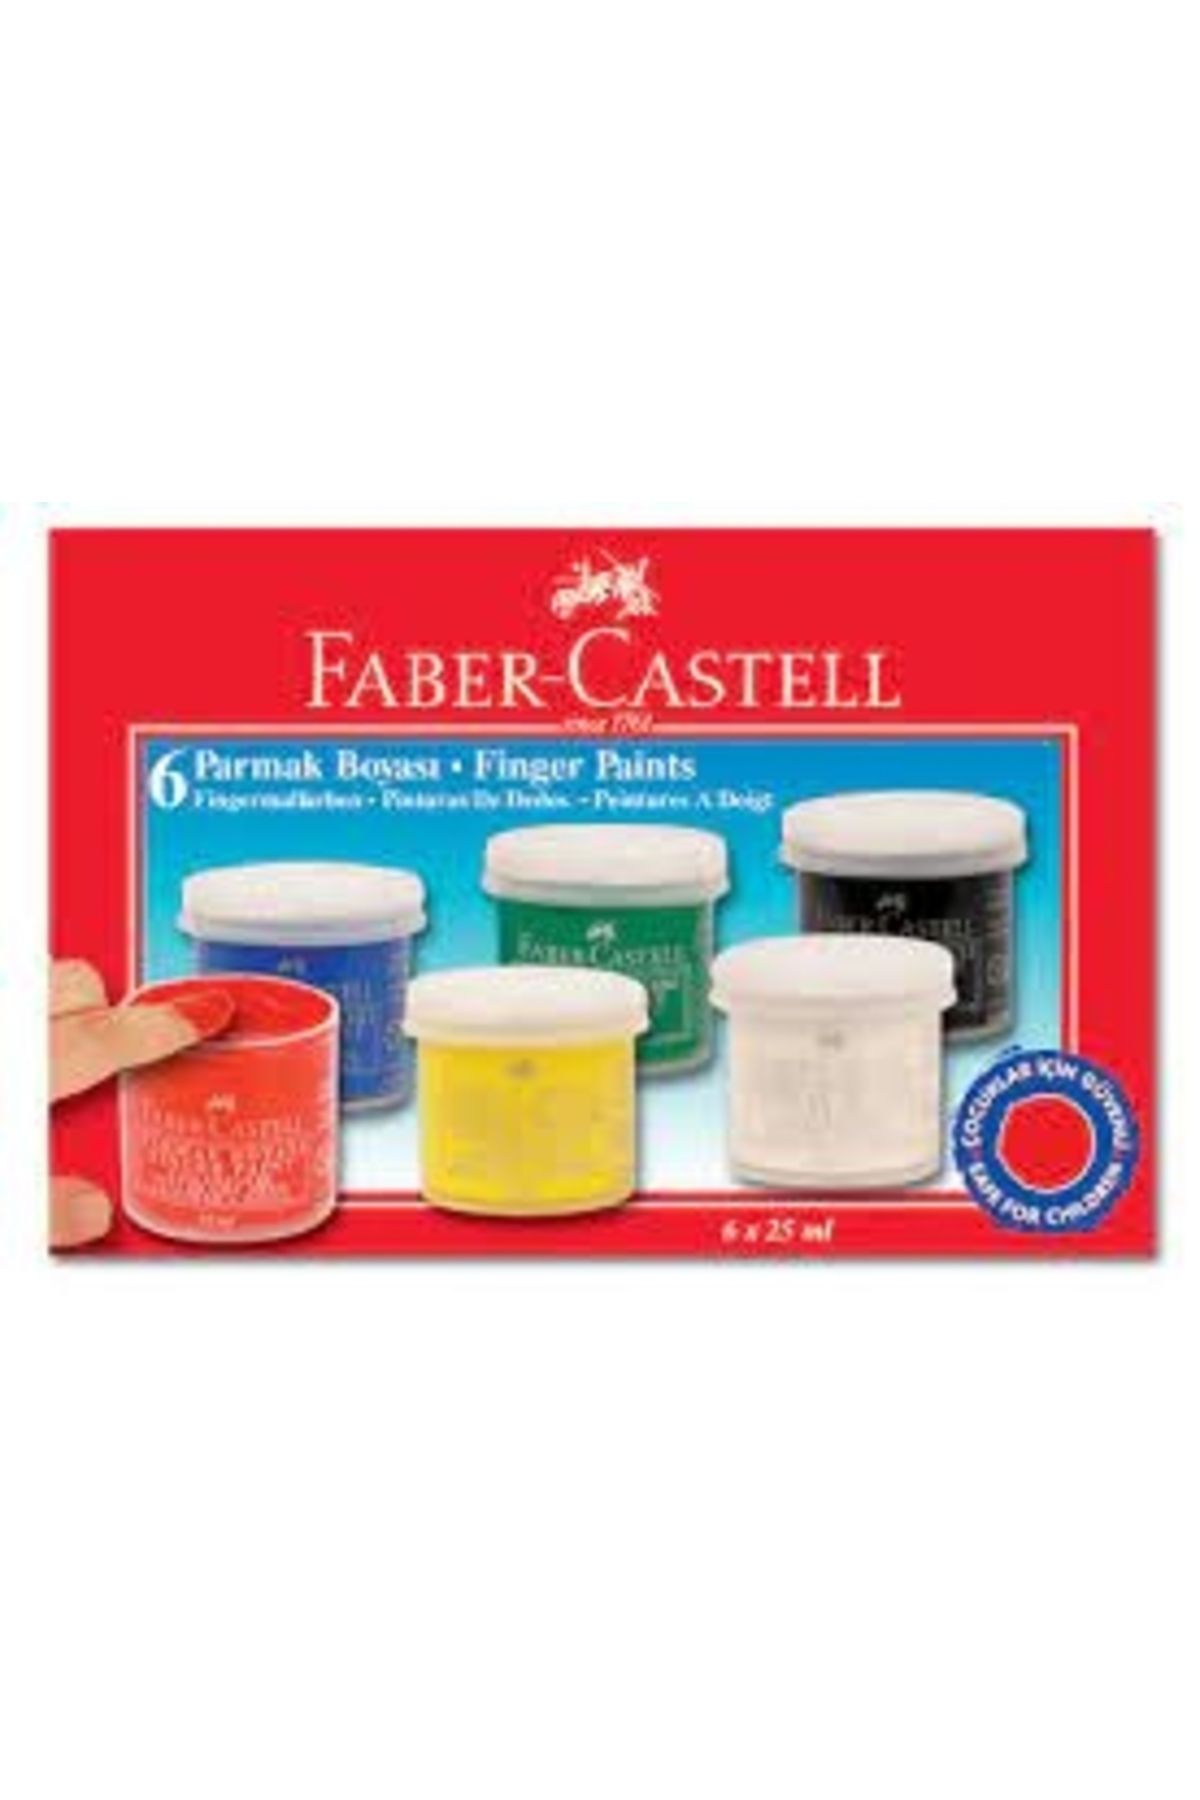 Faber Castell Parmak Boyası 6 Renk X 25 Ml.